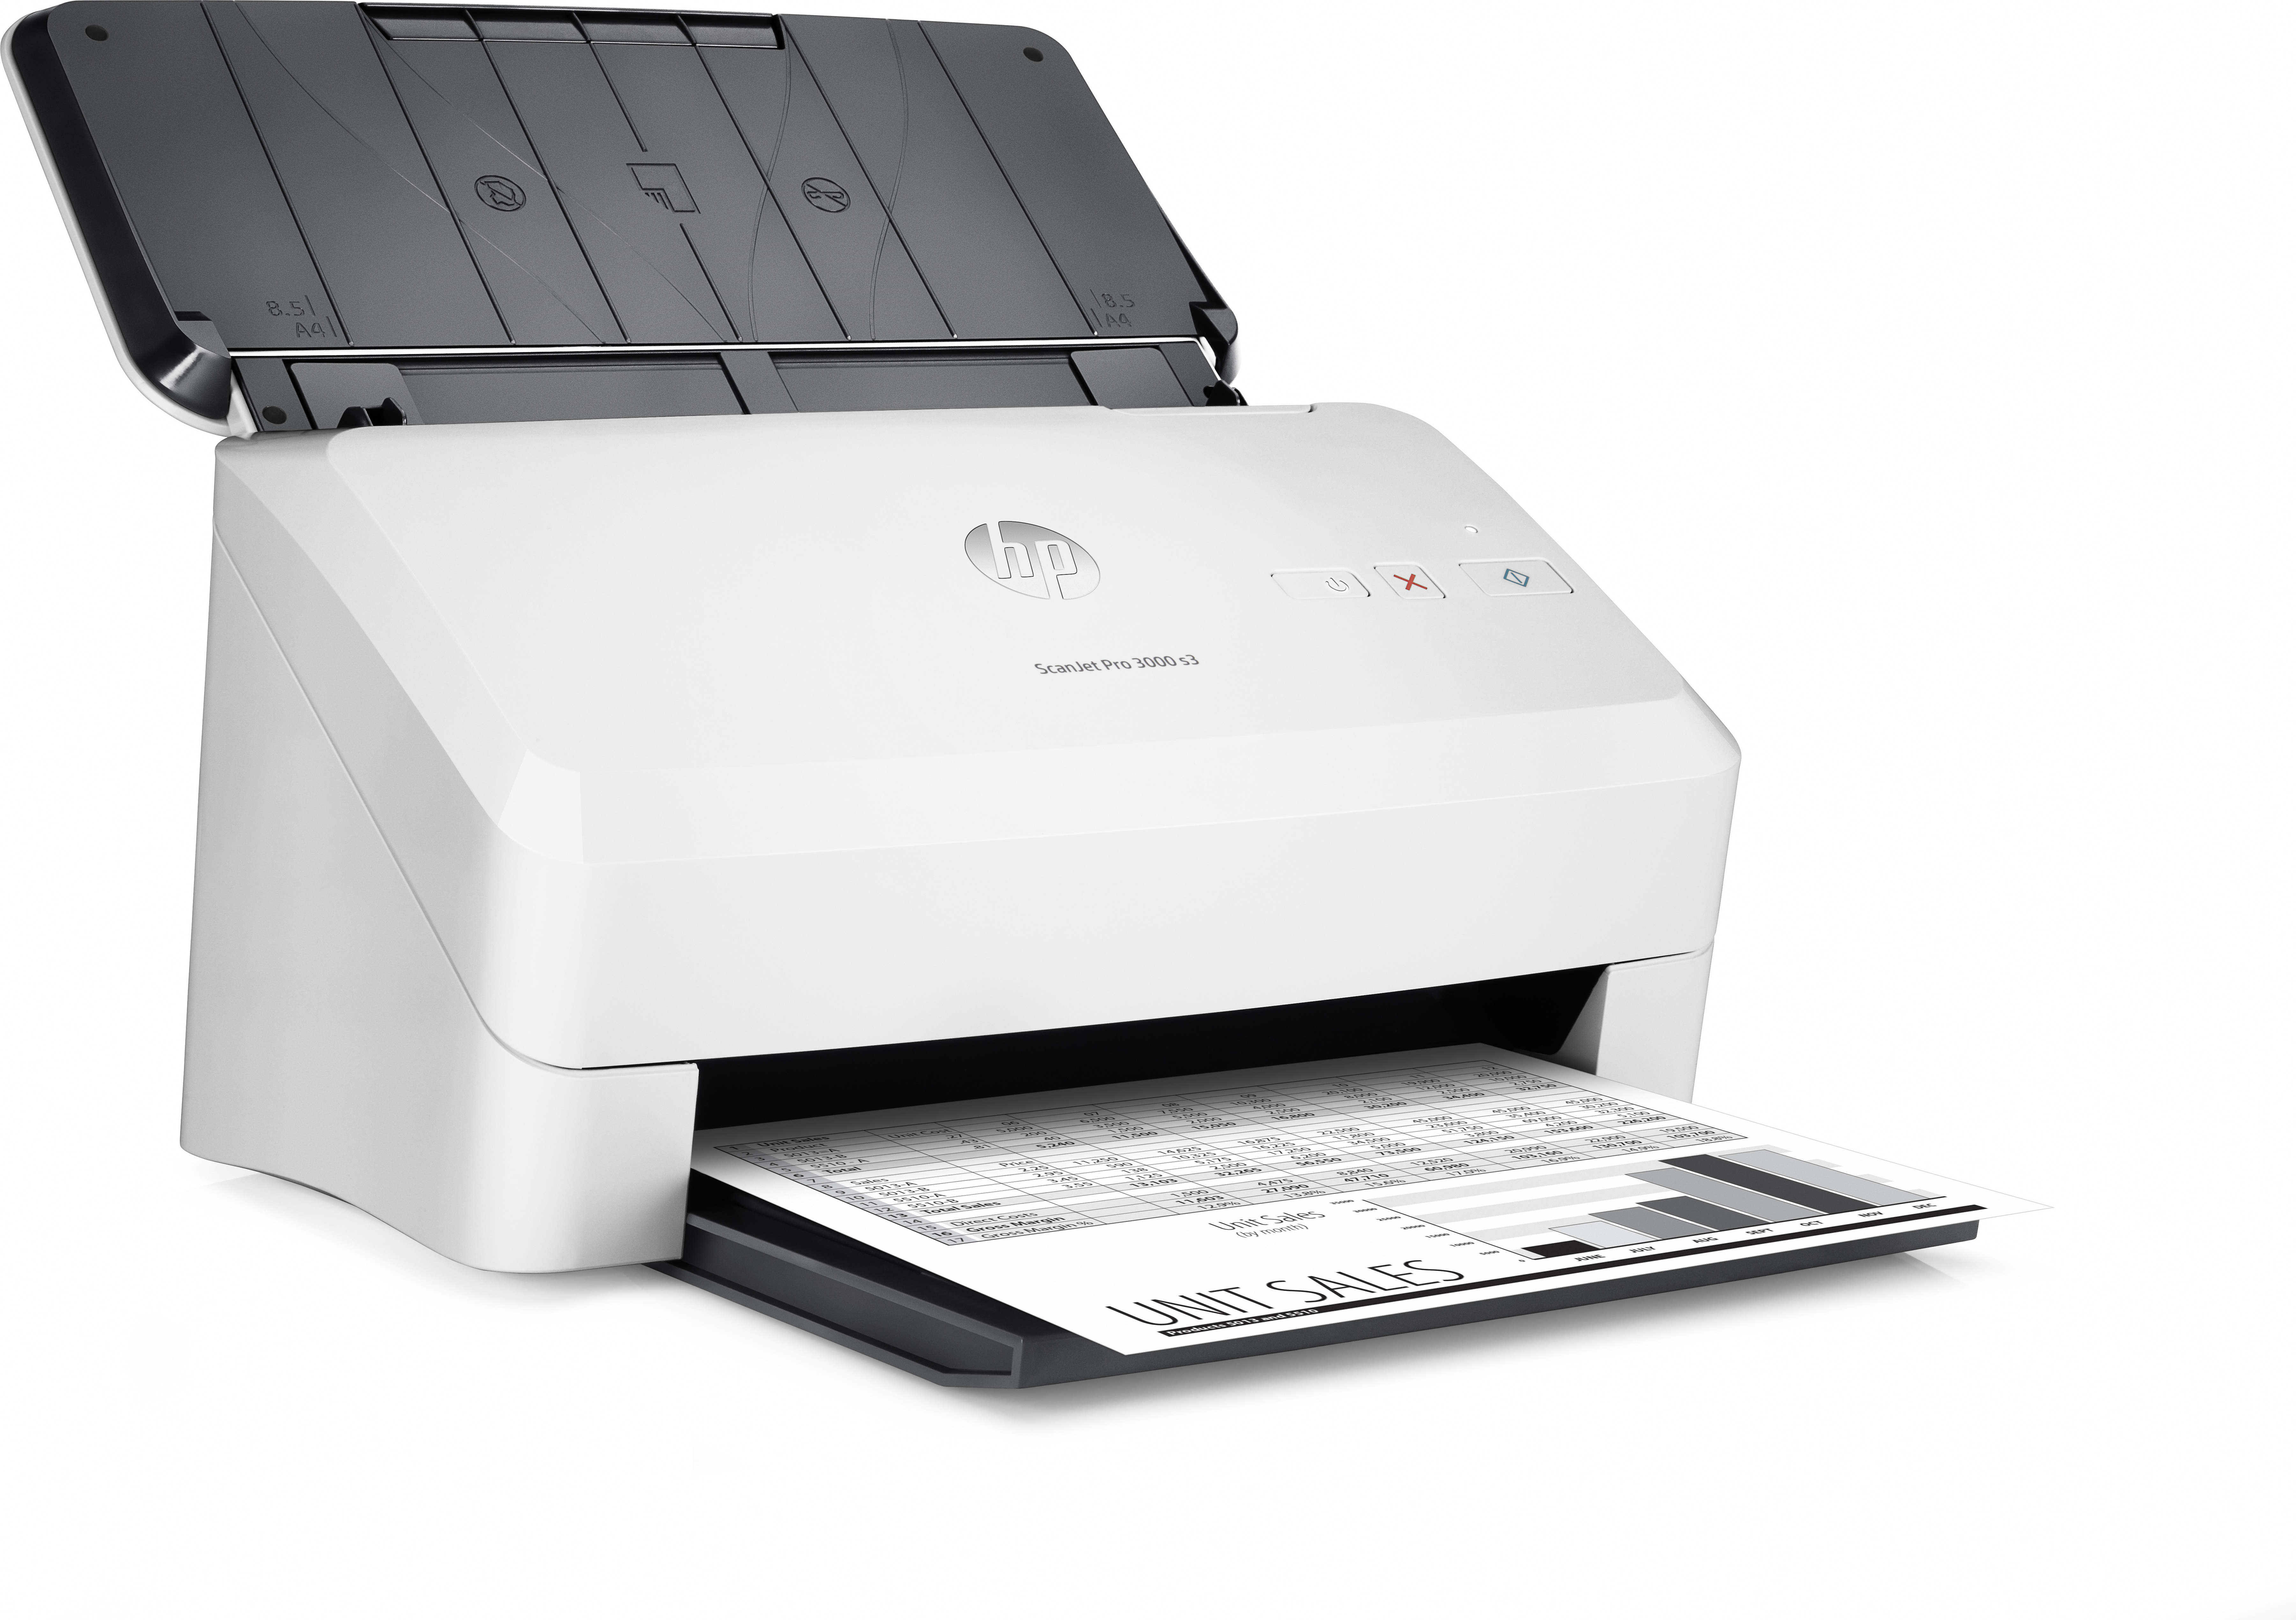 Scanjet Pro 3000 s3 hp 600 x dpi wifi blanco escaner sheetfeed documentos desplazamiento con alimentador hojas 30 sobremesa 35 512 2.03.0